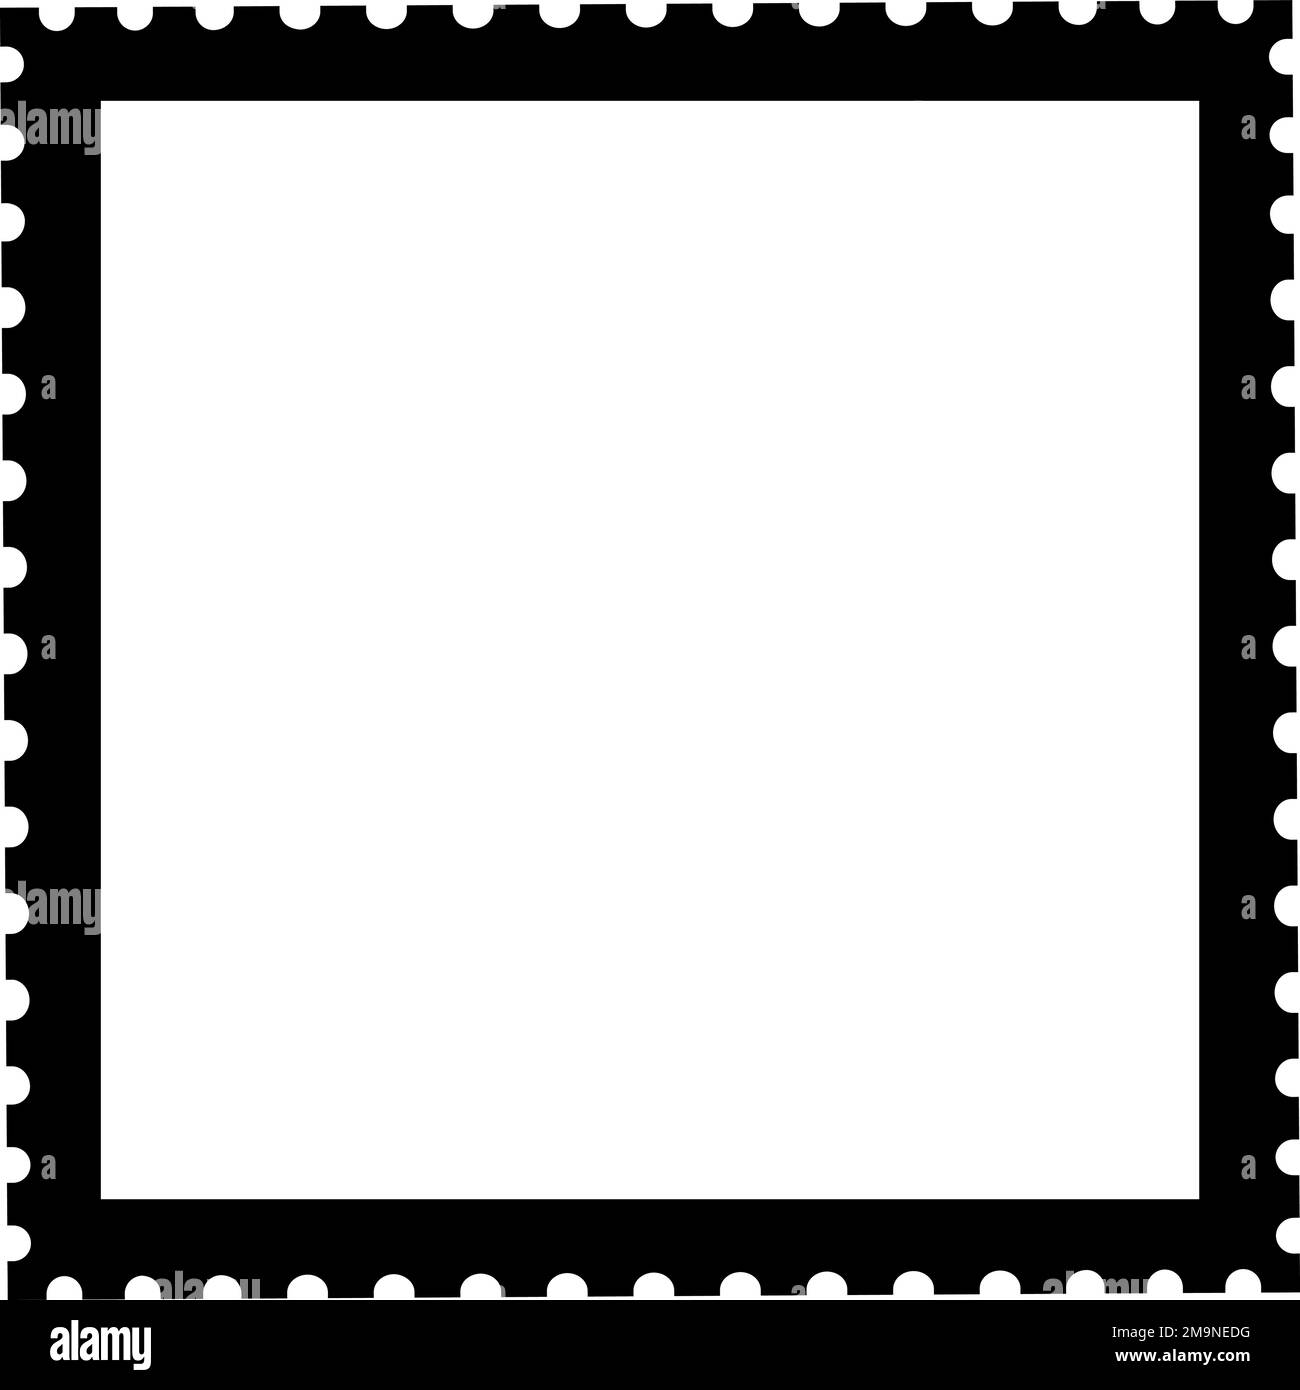 Image de marque de poste vide. Bordure carrée de l'estampille postale Illustration de Vecteur